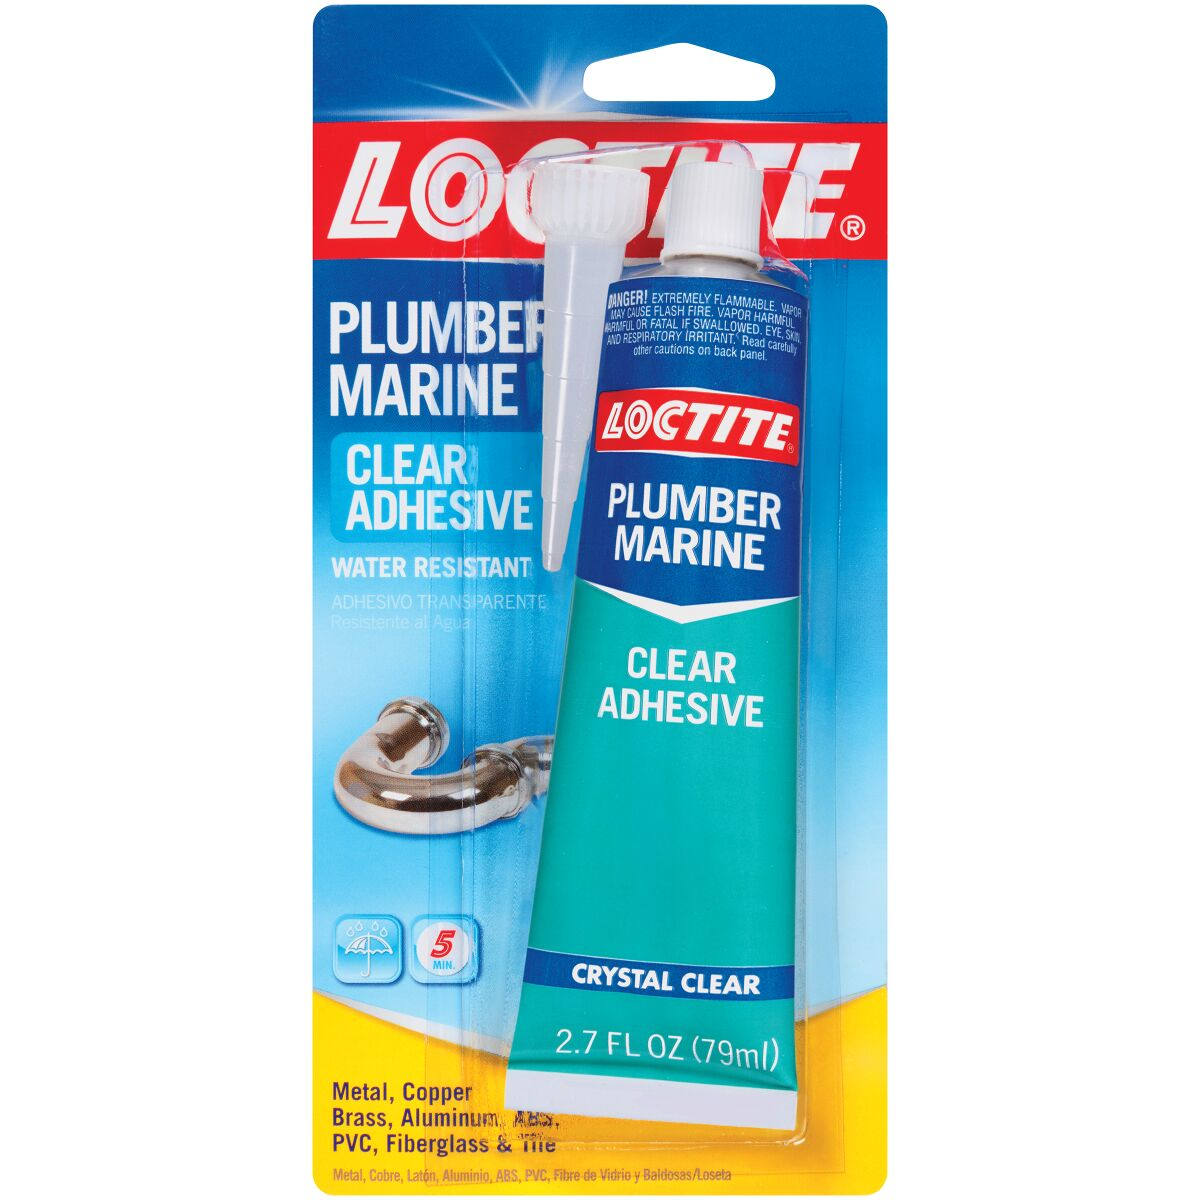 Loctite Plumber Marine Adhesive